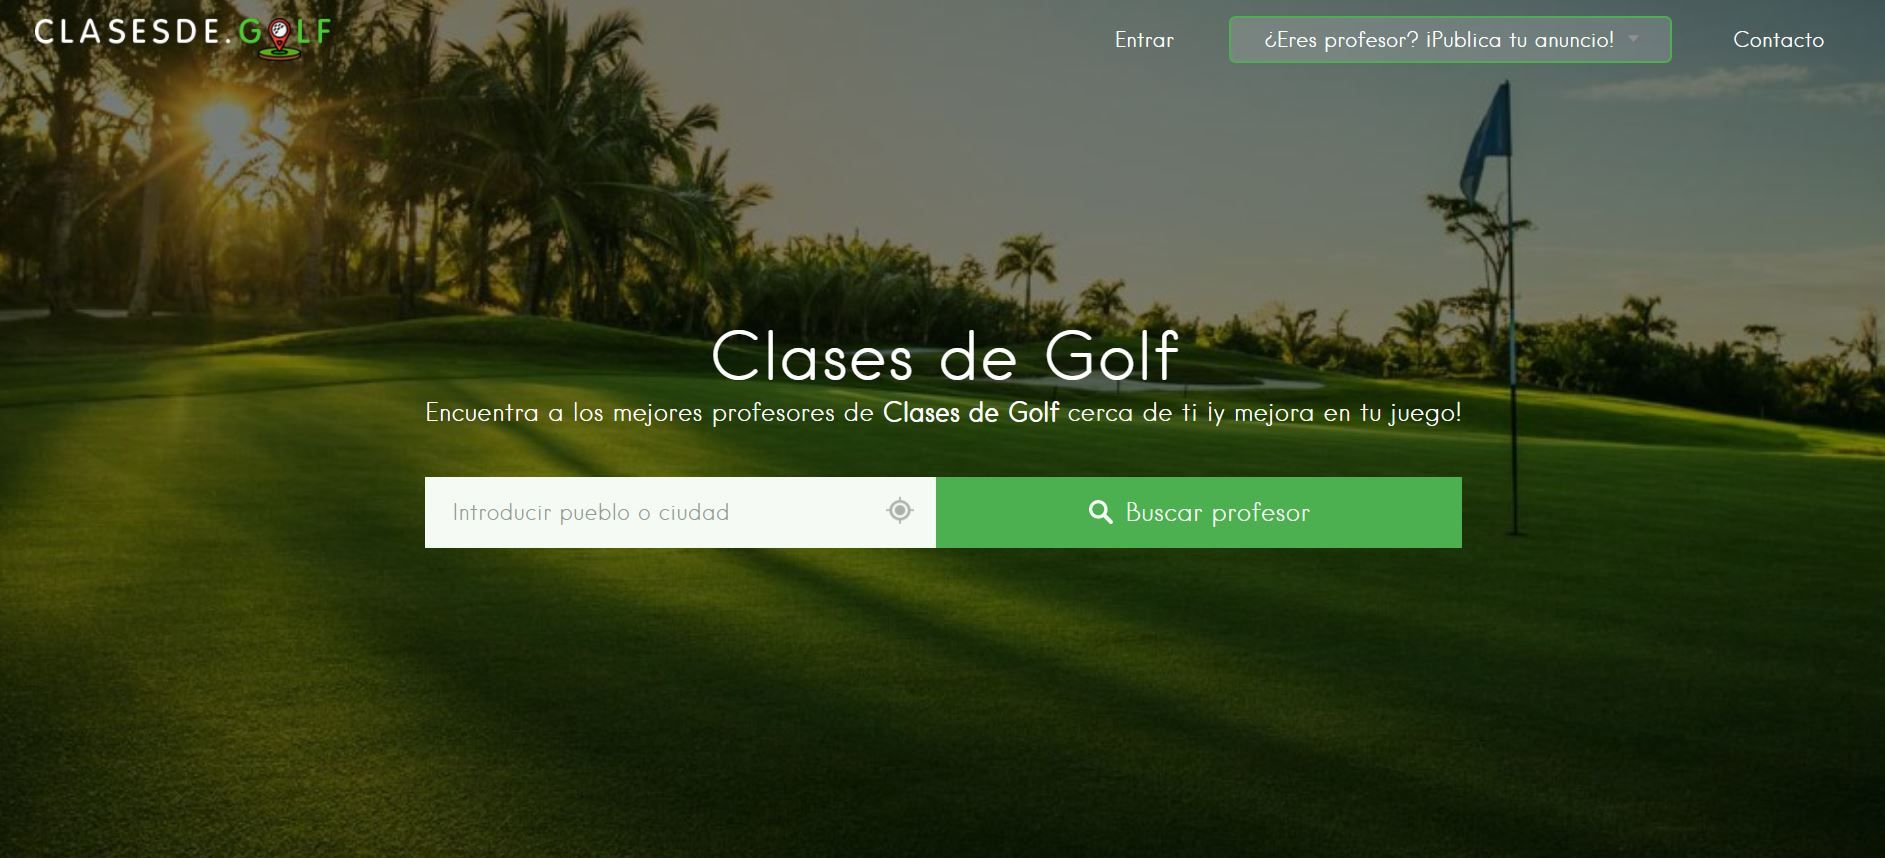 Nace Clasesde.golf, la plataforma especializada para encontrar al mejor profesor de golf